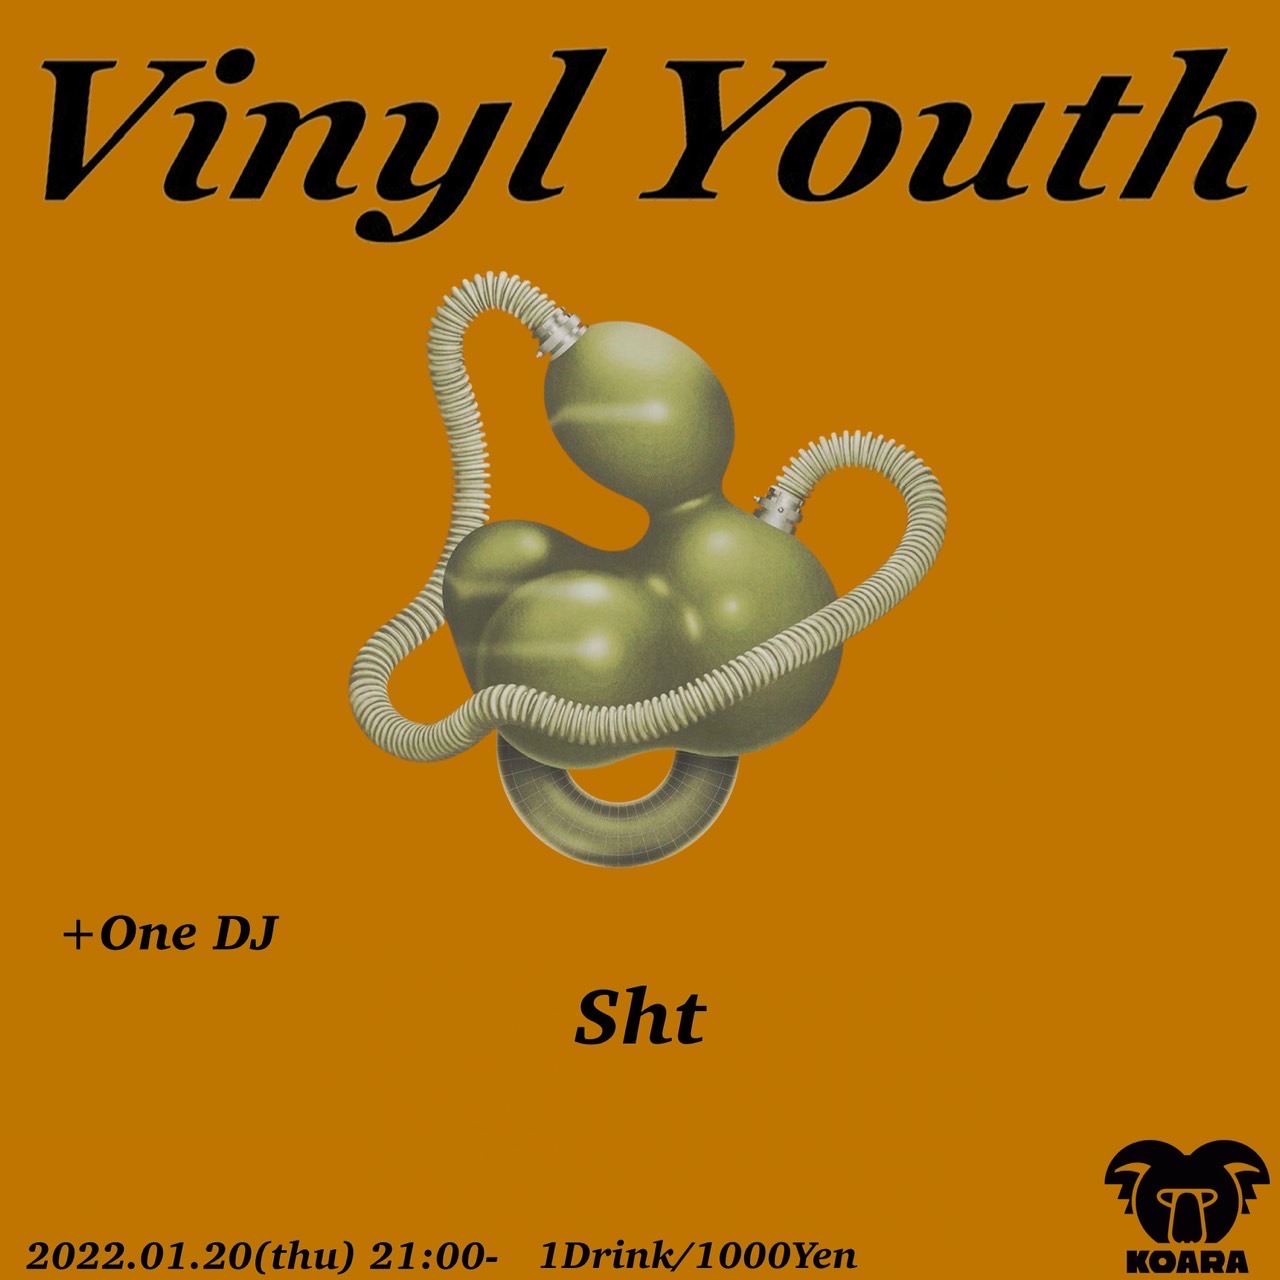 Vinyl Youth